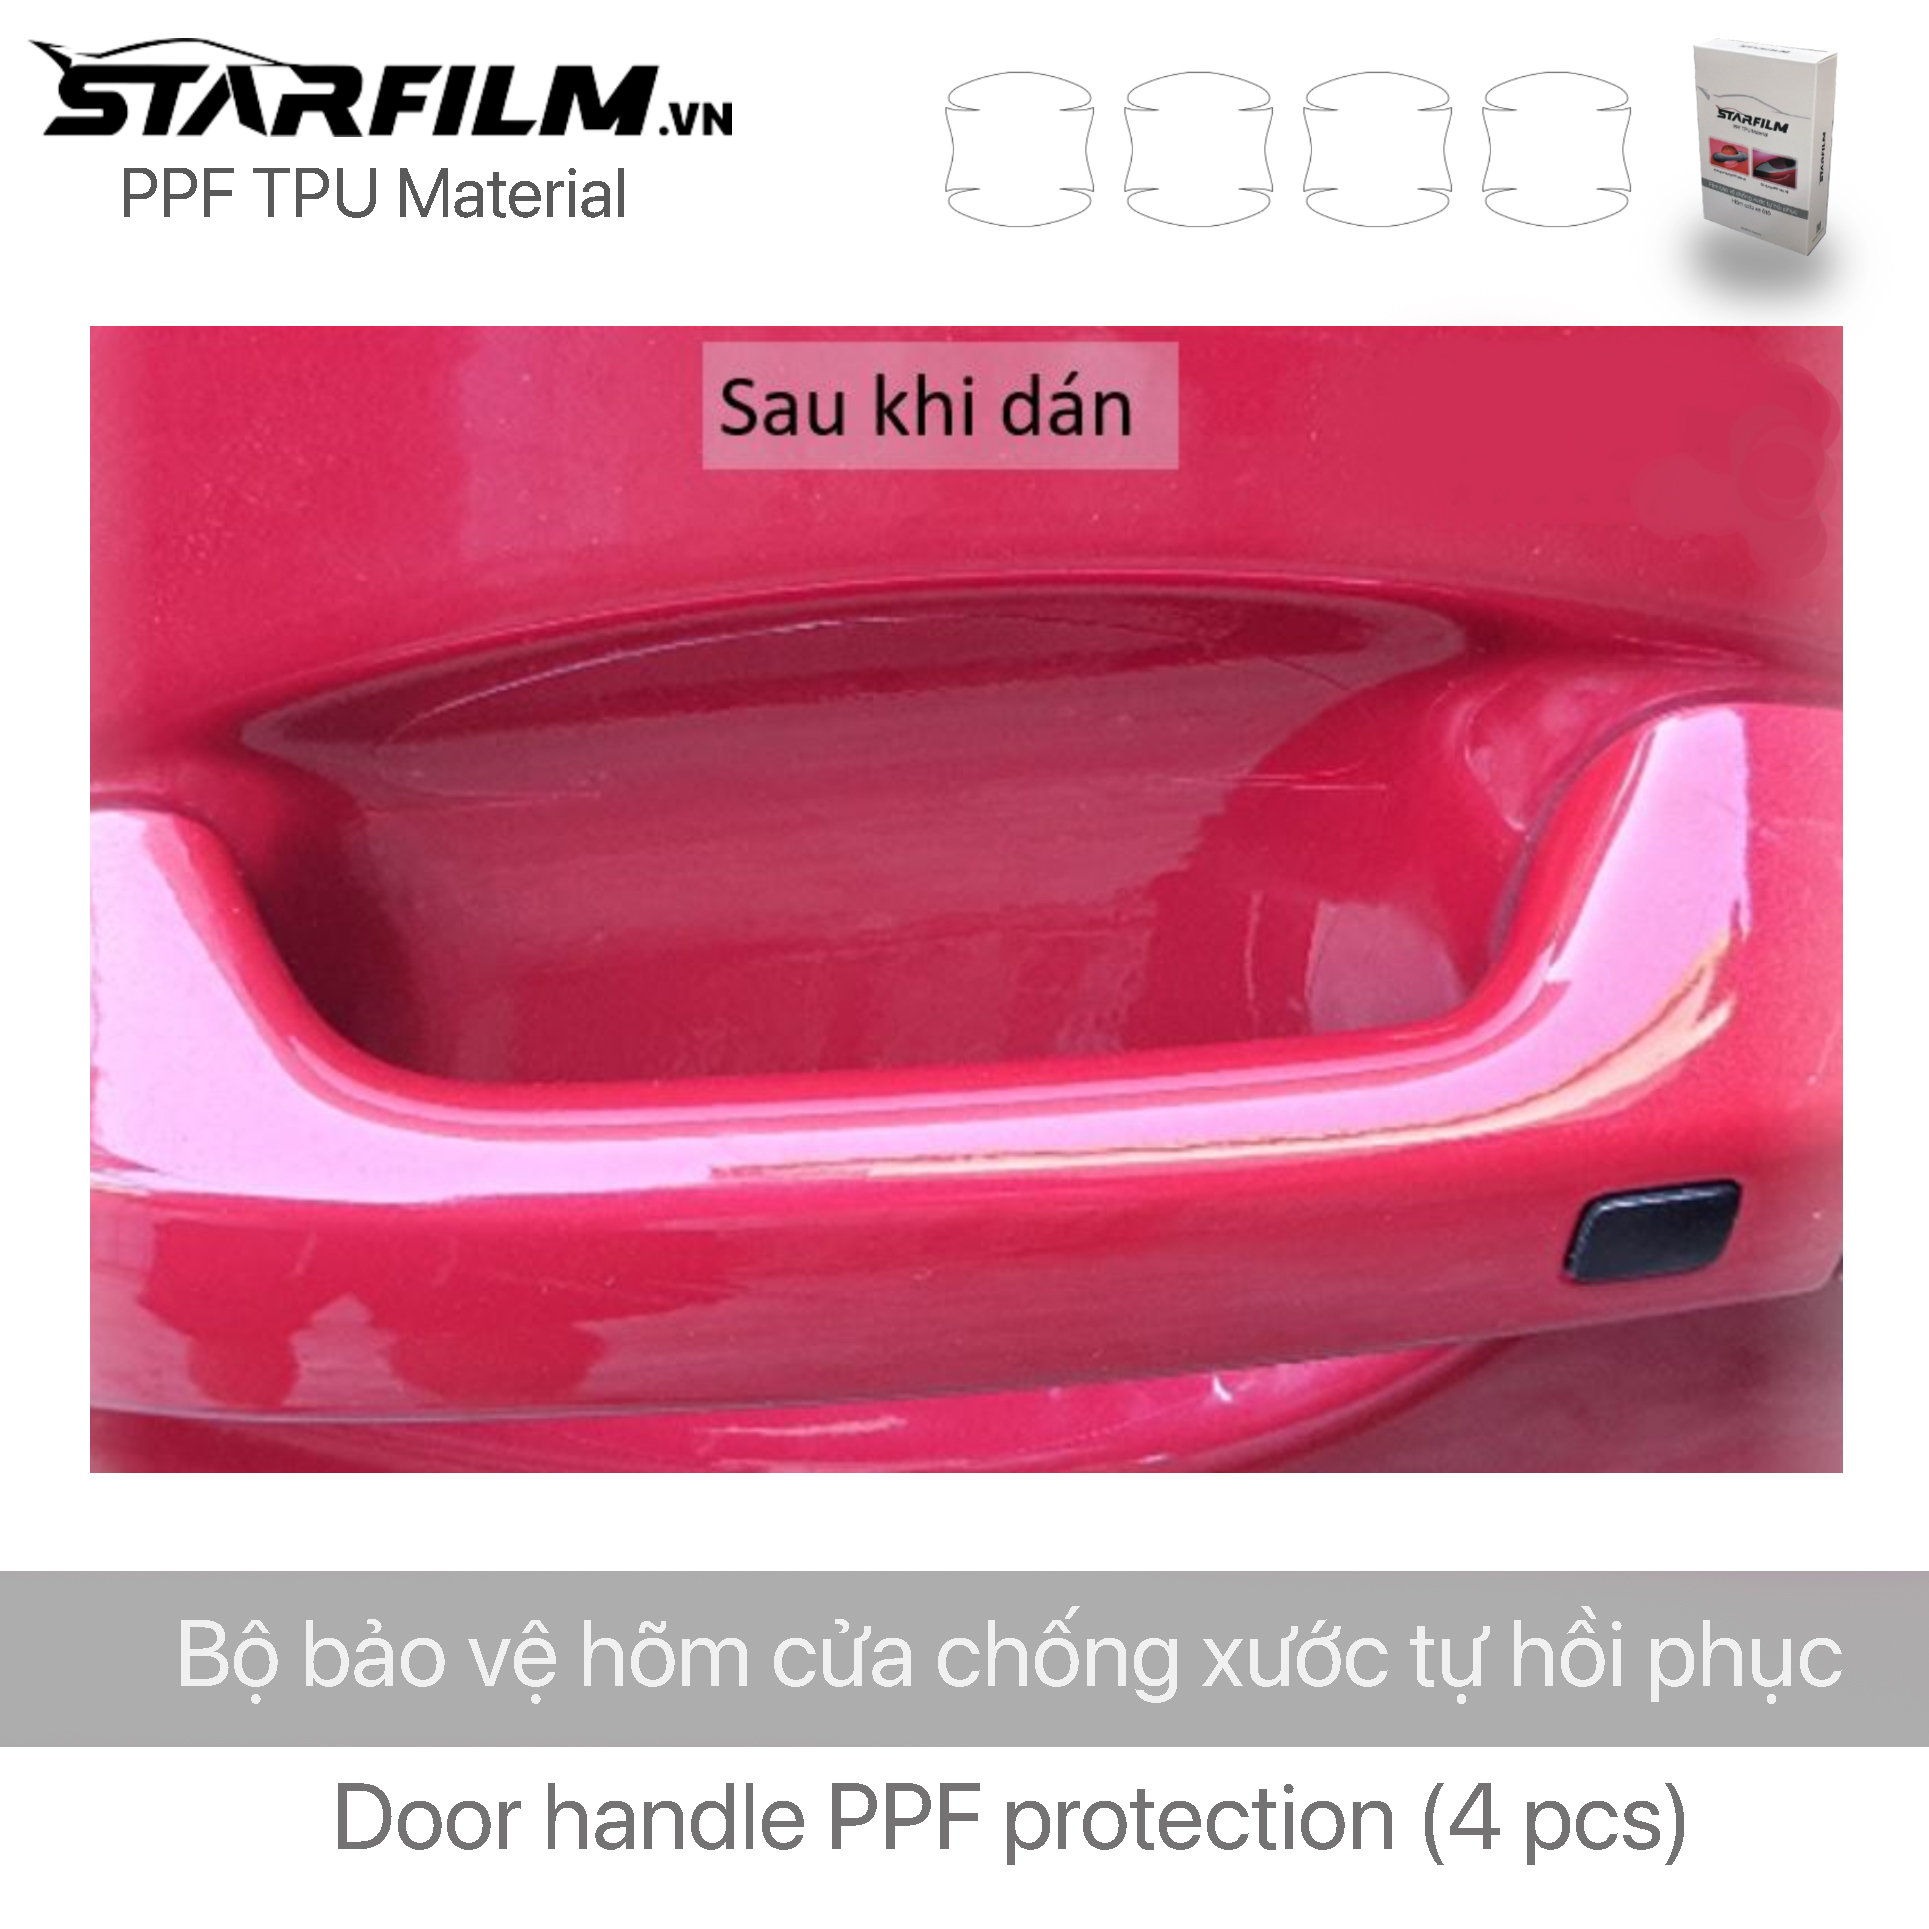 PPF TPU bảo vệ tay nắm hõm cửa xe ô tô STAR FILM (PREMIUM)